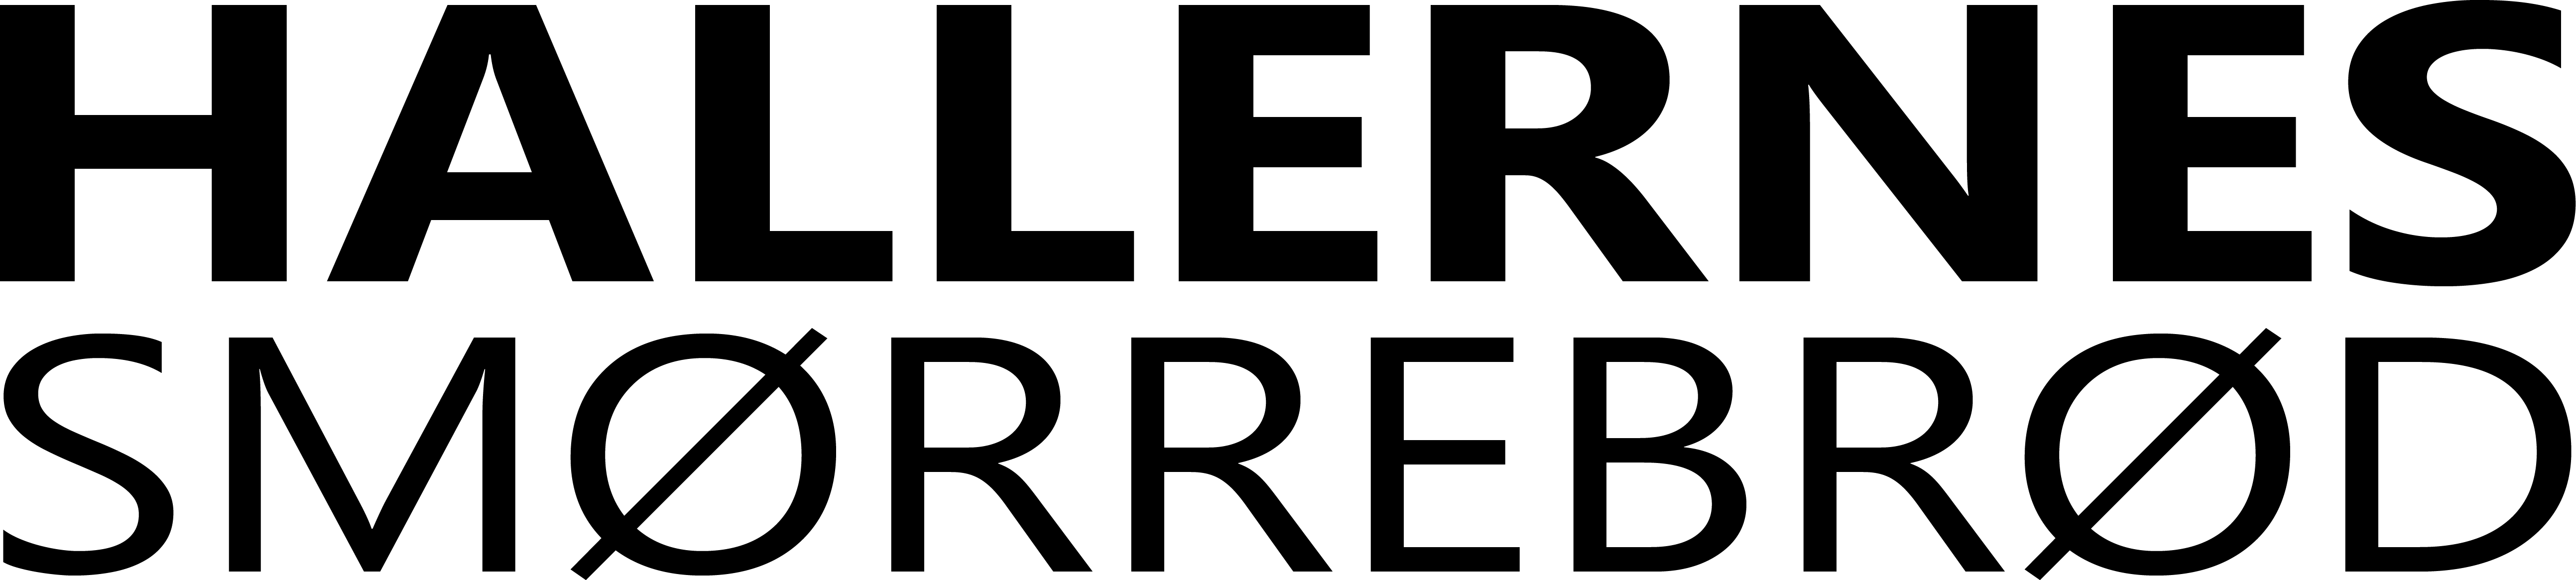 Hallernes smørrebrød logo